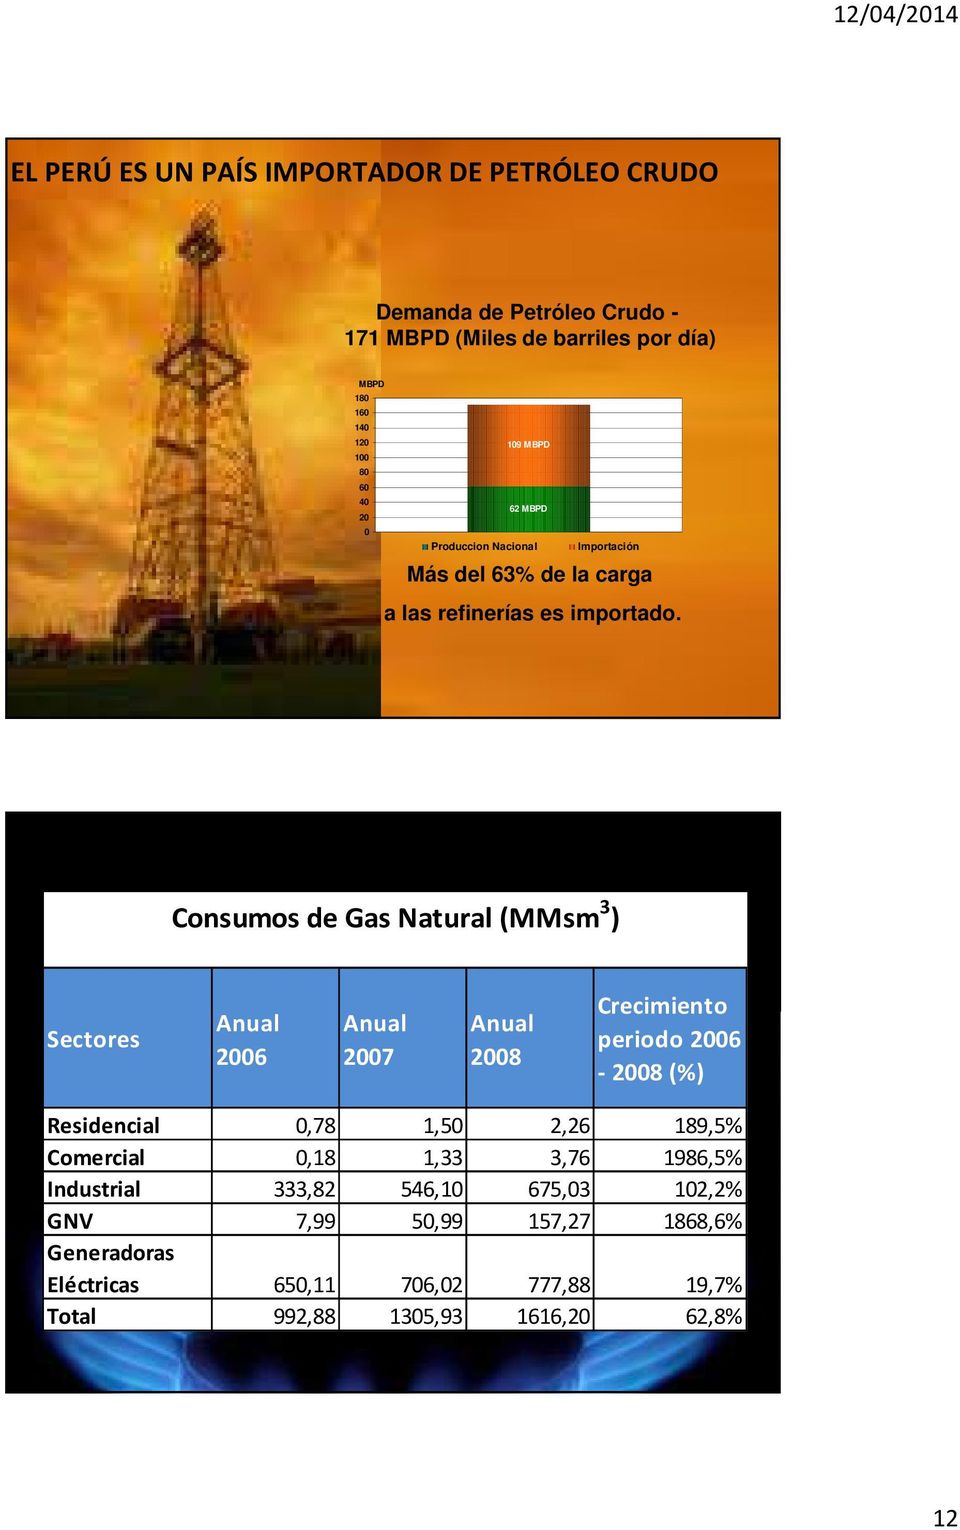 Consumos de Gas Natural (MMsm 3 ) Sectores Anual 2006 Anual 2007 Anual 2008 Crecimiento periodo 2006-2008 (%) Residencial 0,78 1,50 2,26 189,5%